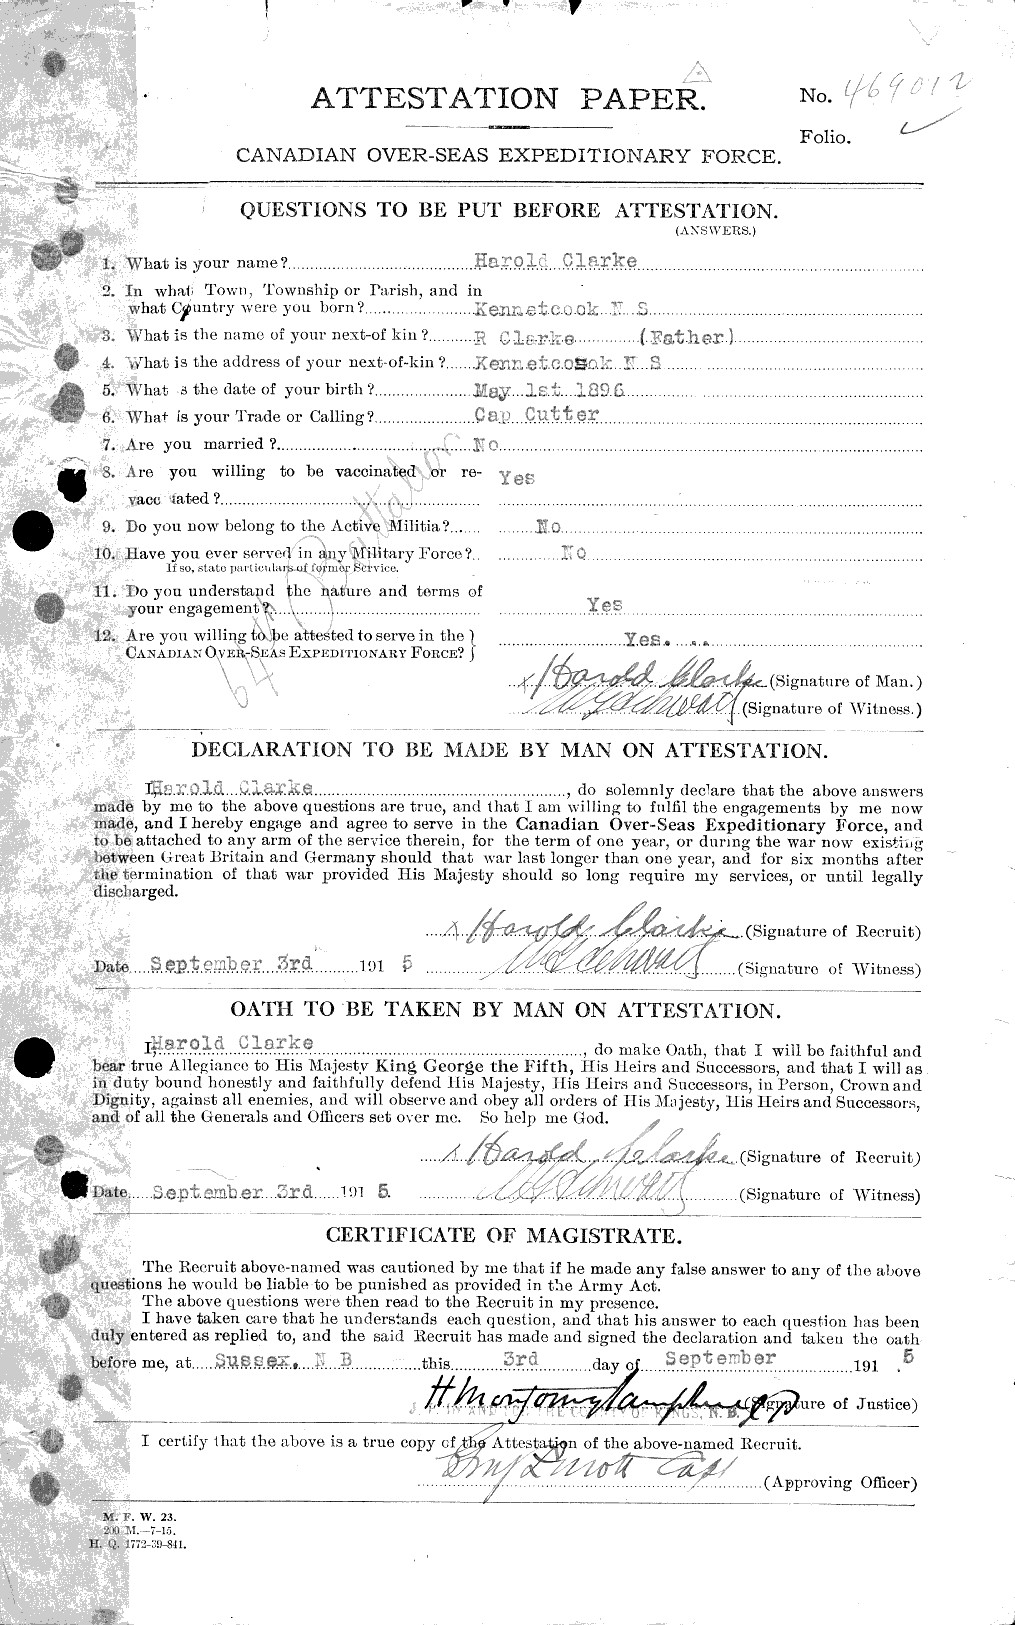 Dossiers du Personnel de la Première Guerre mondiale - CEC 024332a